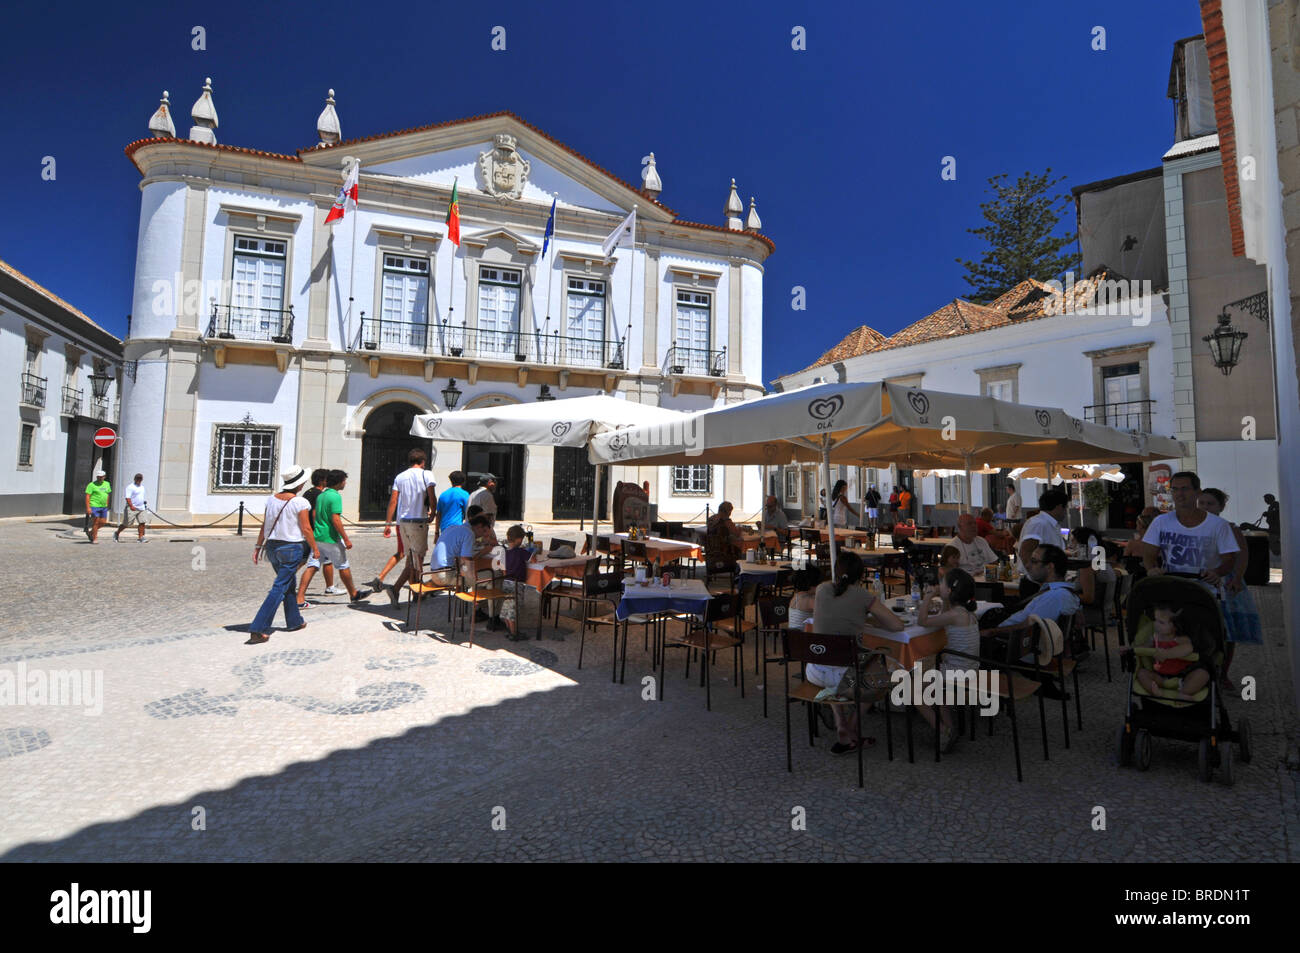 L'Hôtel de ville et cafe, Velha, vieille ville de Faro, Portugal Banque D'Images